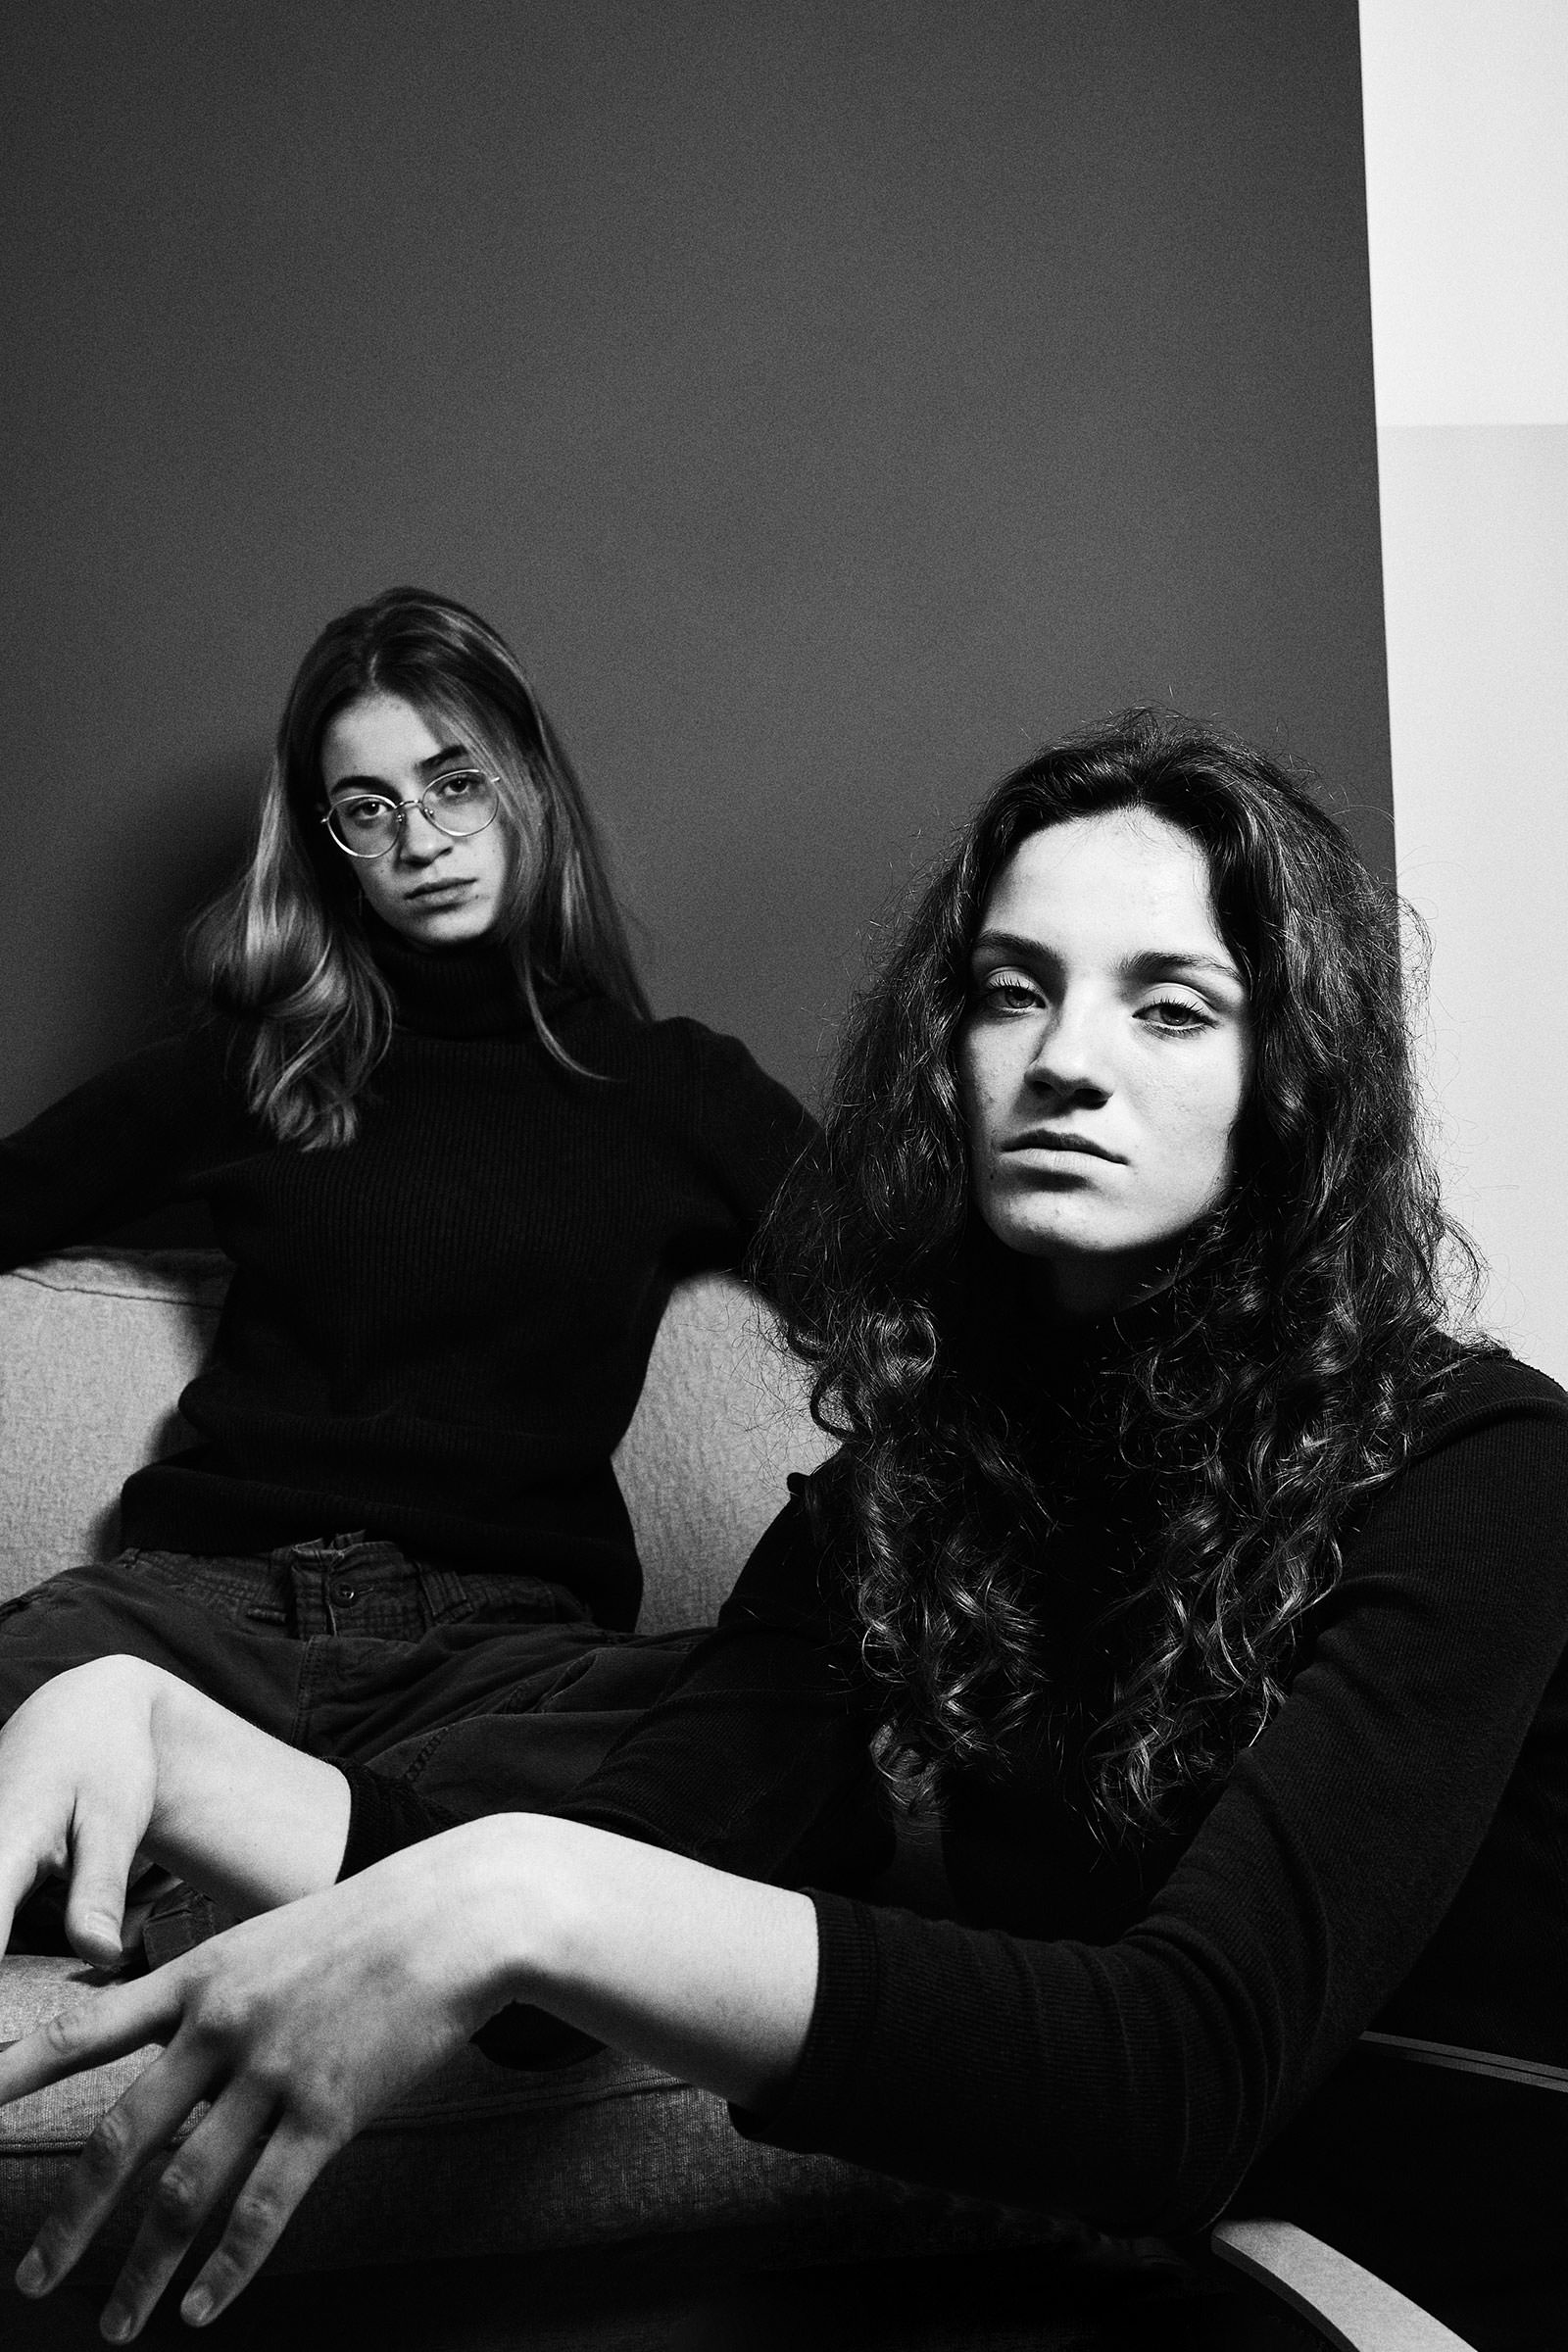 In Schwarz-Weiß fotografiertes Portrait von zwei jungen Frauen.